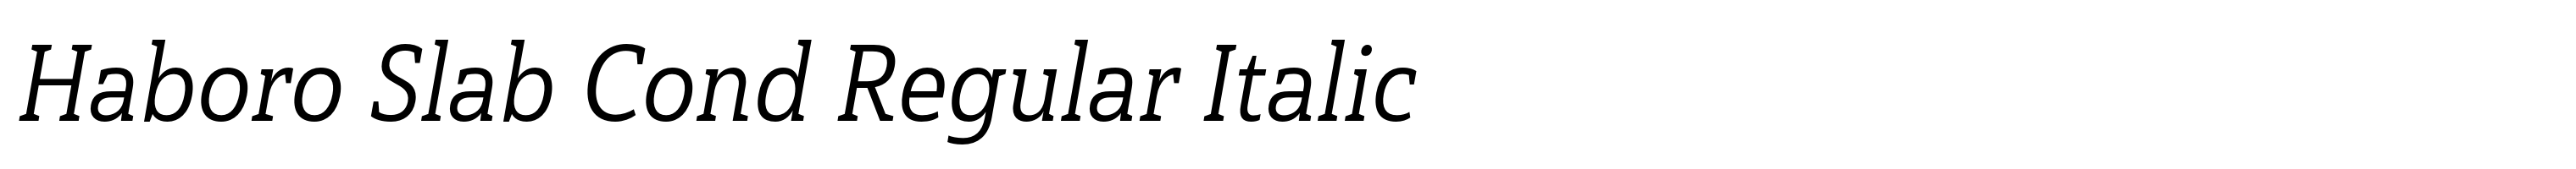 Haboro Slab Cond Regular Italic